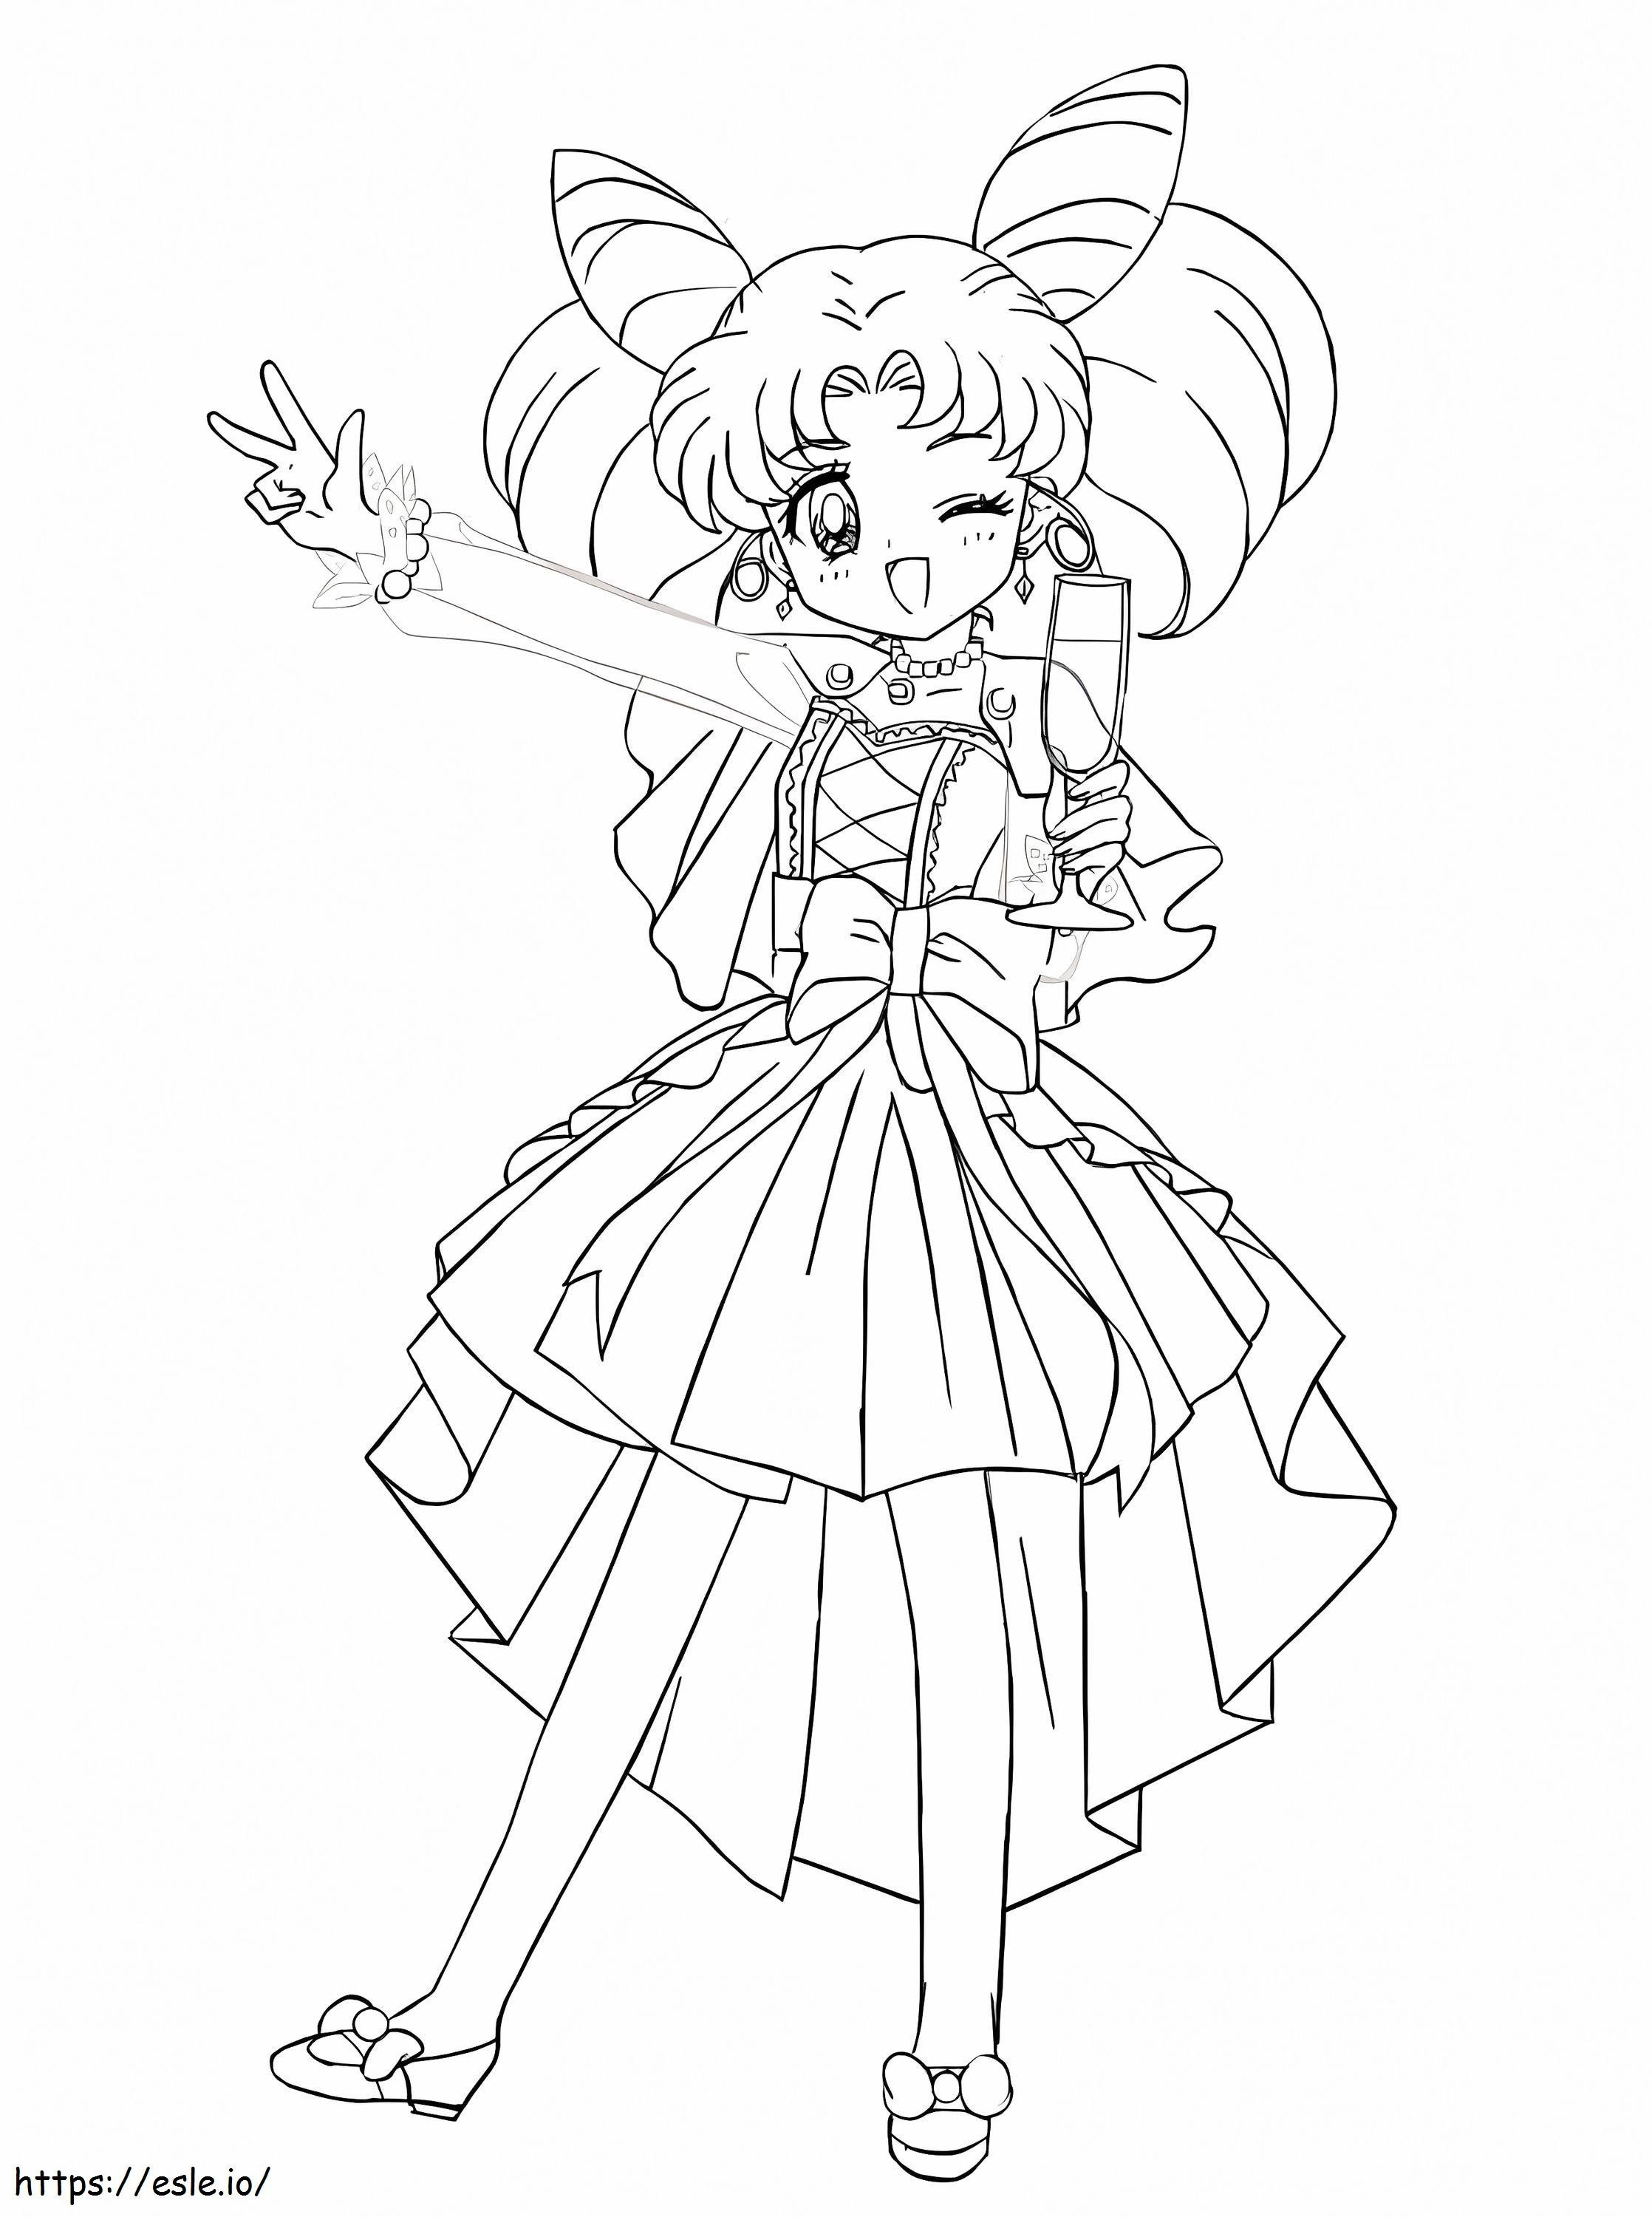 Sailor Moon Chibiusa coloring page